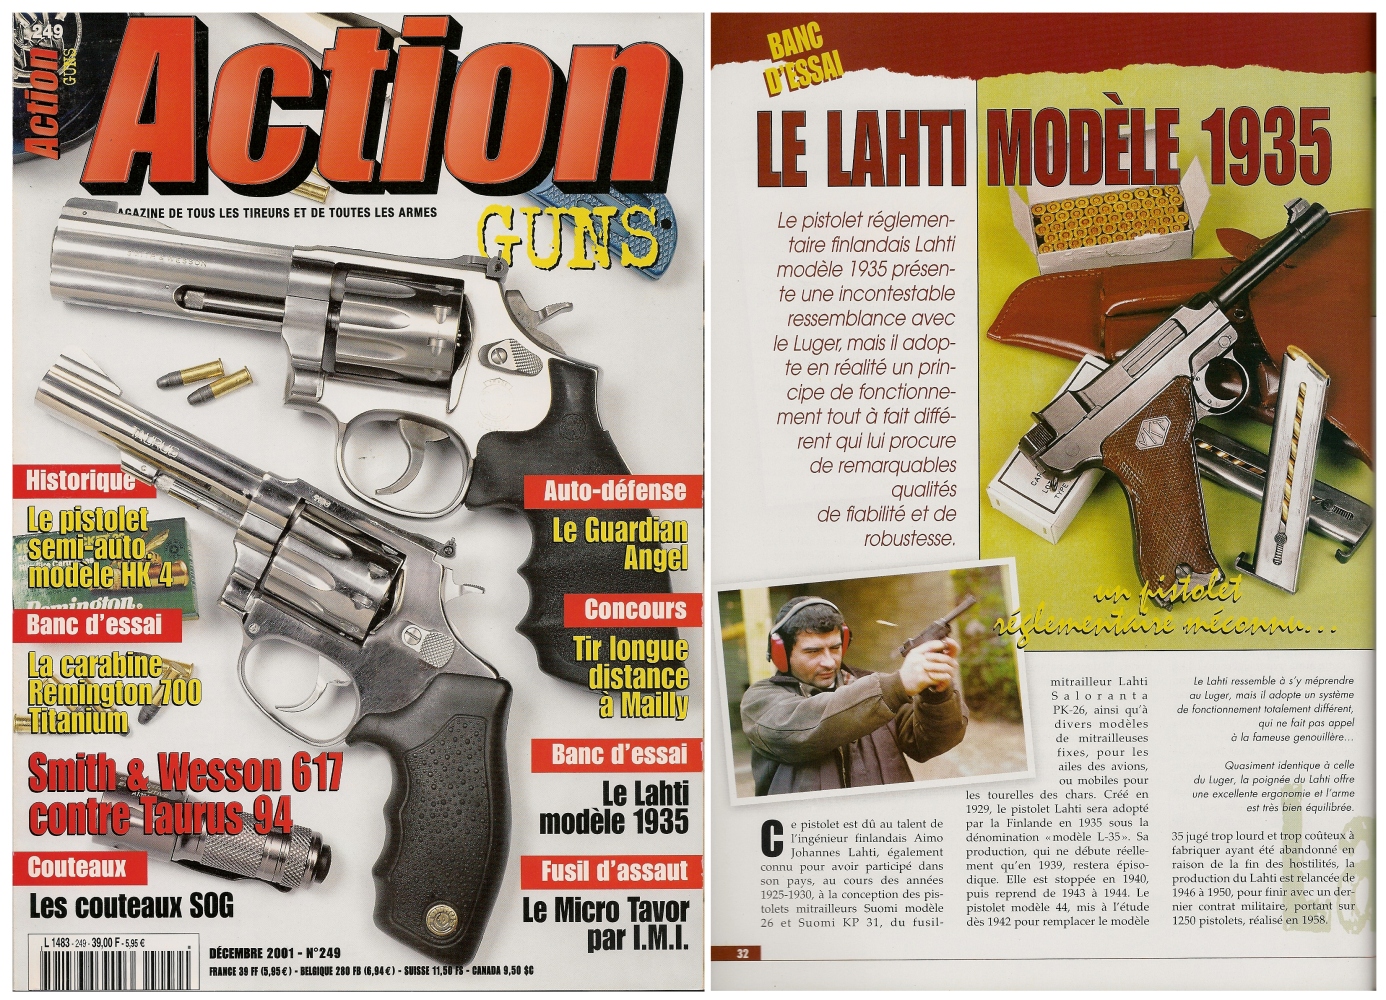 Le banc d’essai du pistolet Lahti modèle 1935 a été publié sur 7 pages dans le magazine Action Guns n°249 (décembre 2001)